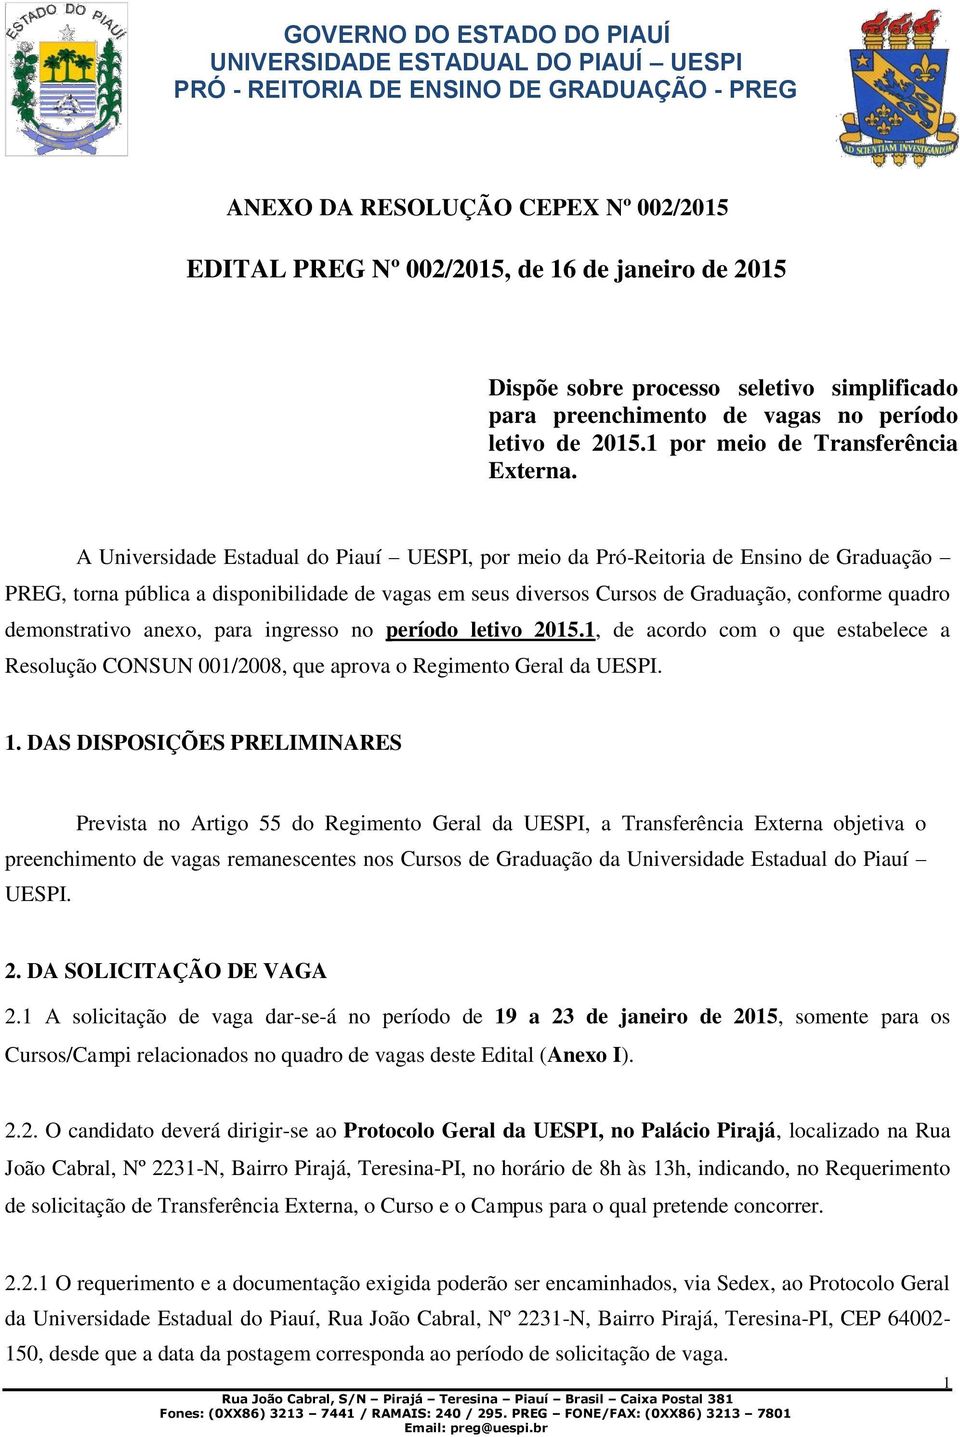 A Universidade Estadual do Piauí UESPI, por meio da Pró-Reitoria de Ensino de Graduação PREG, torna pública a disponibilidade de vagas em seus diversos Cursos de Graduação, conforme quadro